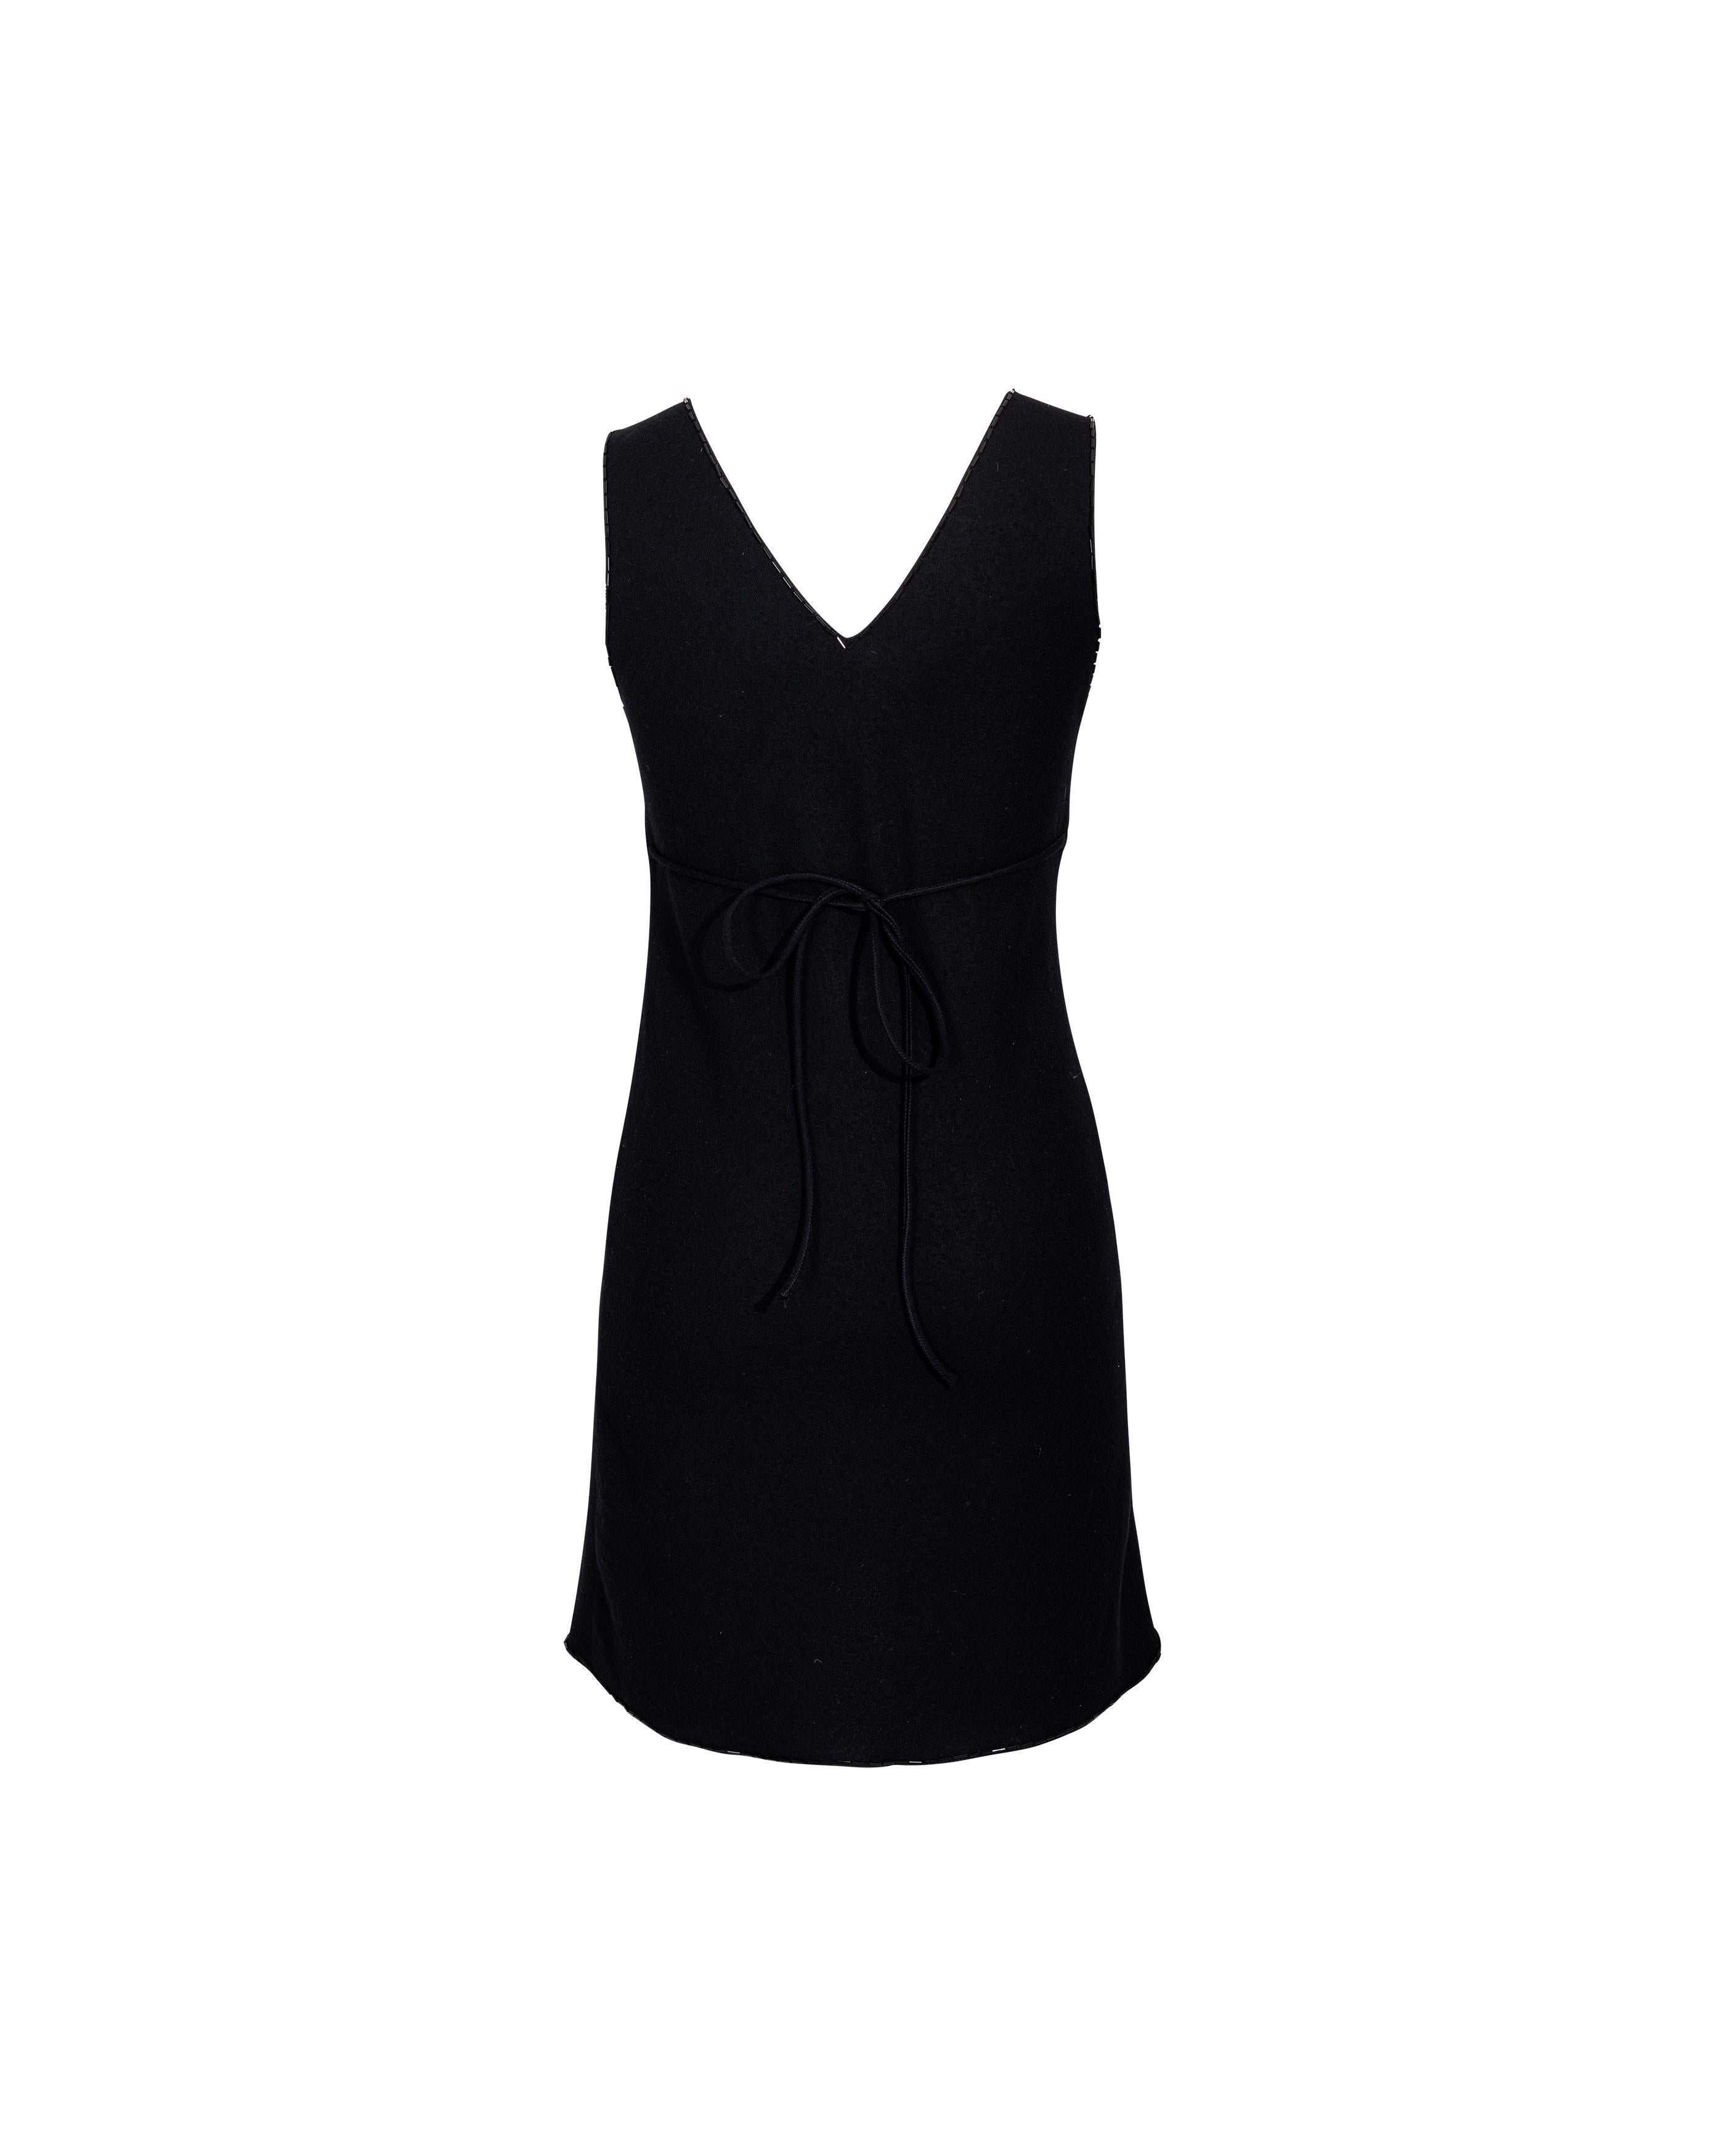 A/W 1997 Prada by Miuccia Prada Black Wool Mini Dress with Beaded Trim 4